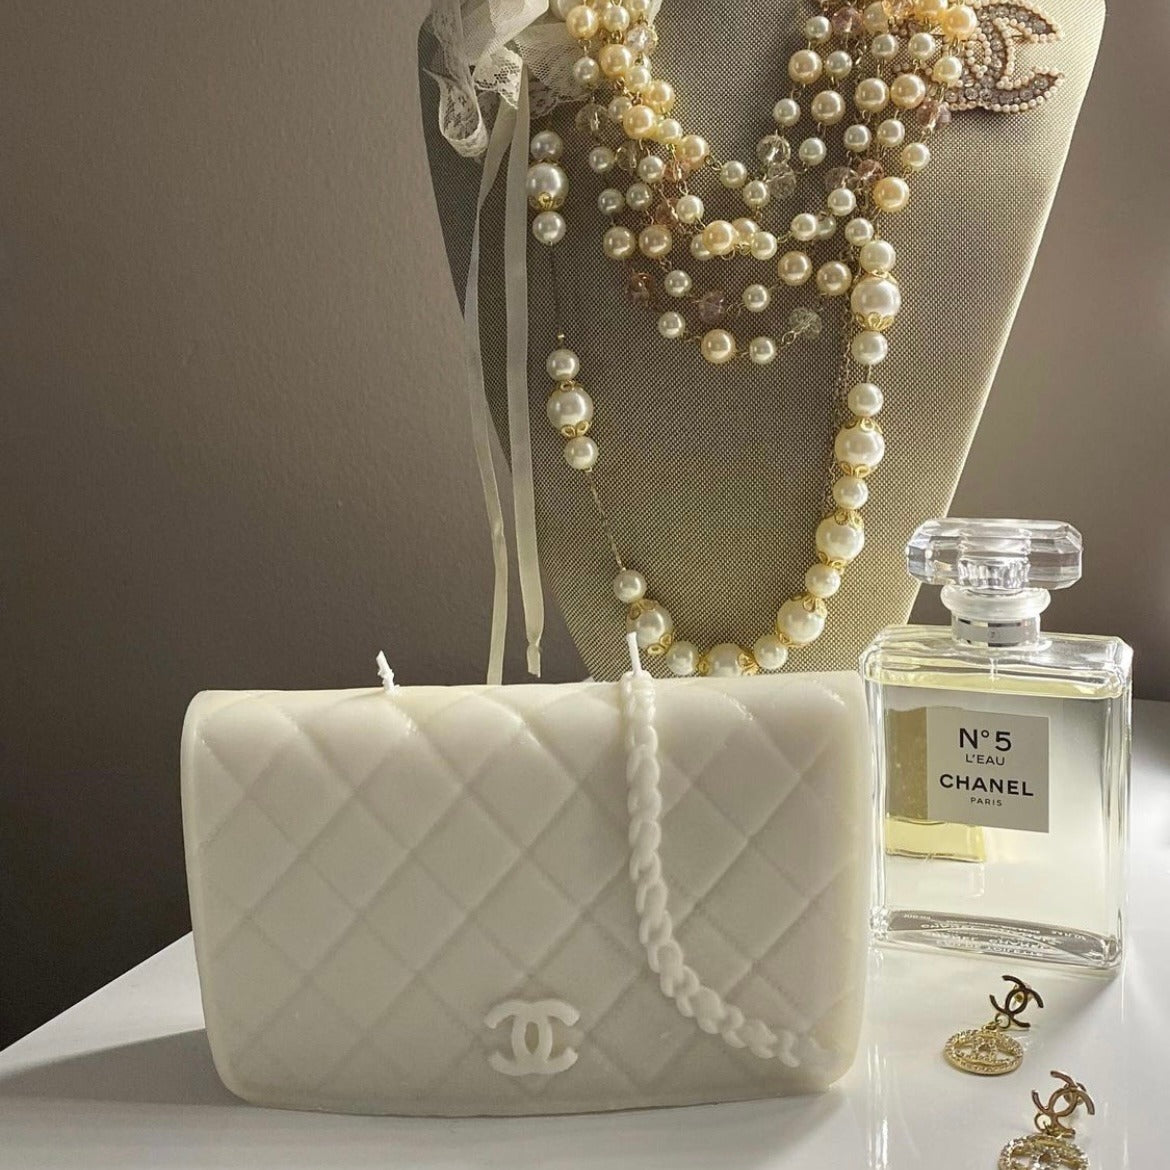 Best & Worst Luxury Handbags CHANEL, YSL, GUCCI, LOUIS VUITTON